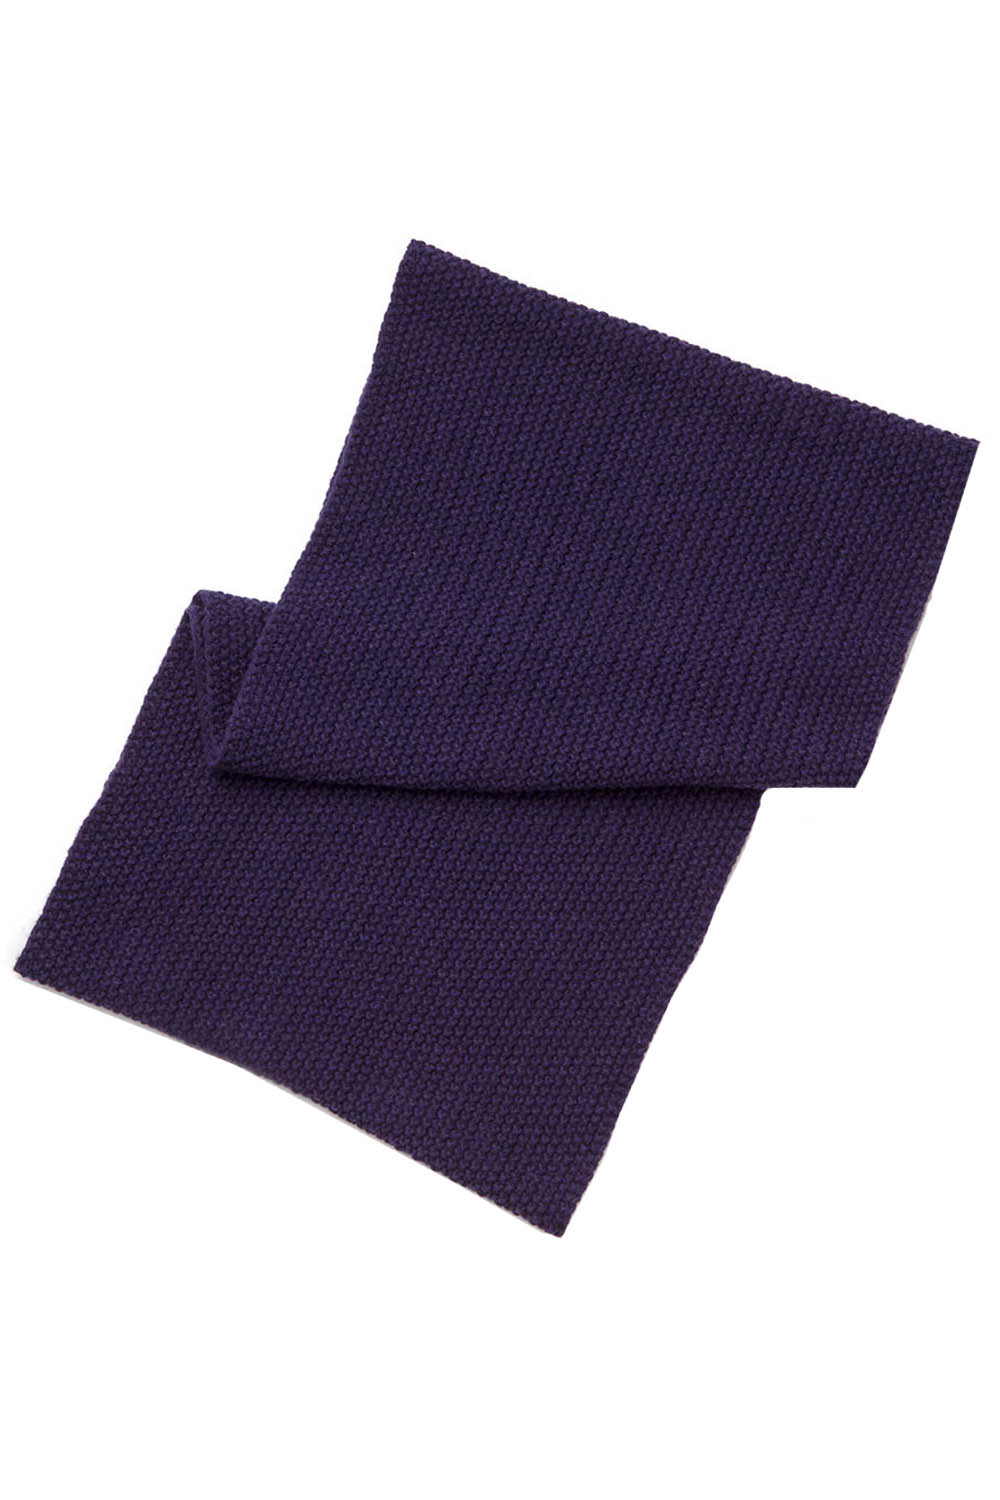 Снуд Chobi, размер 54-56, цвет фиолетовый